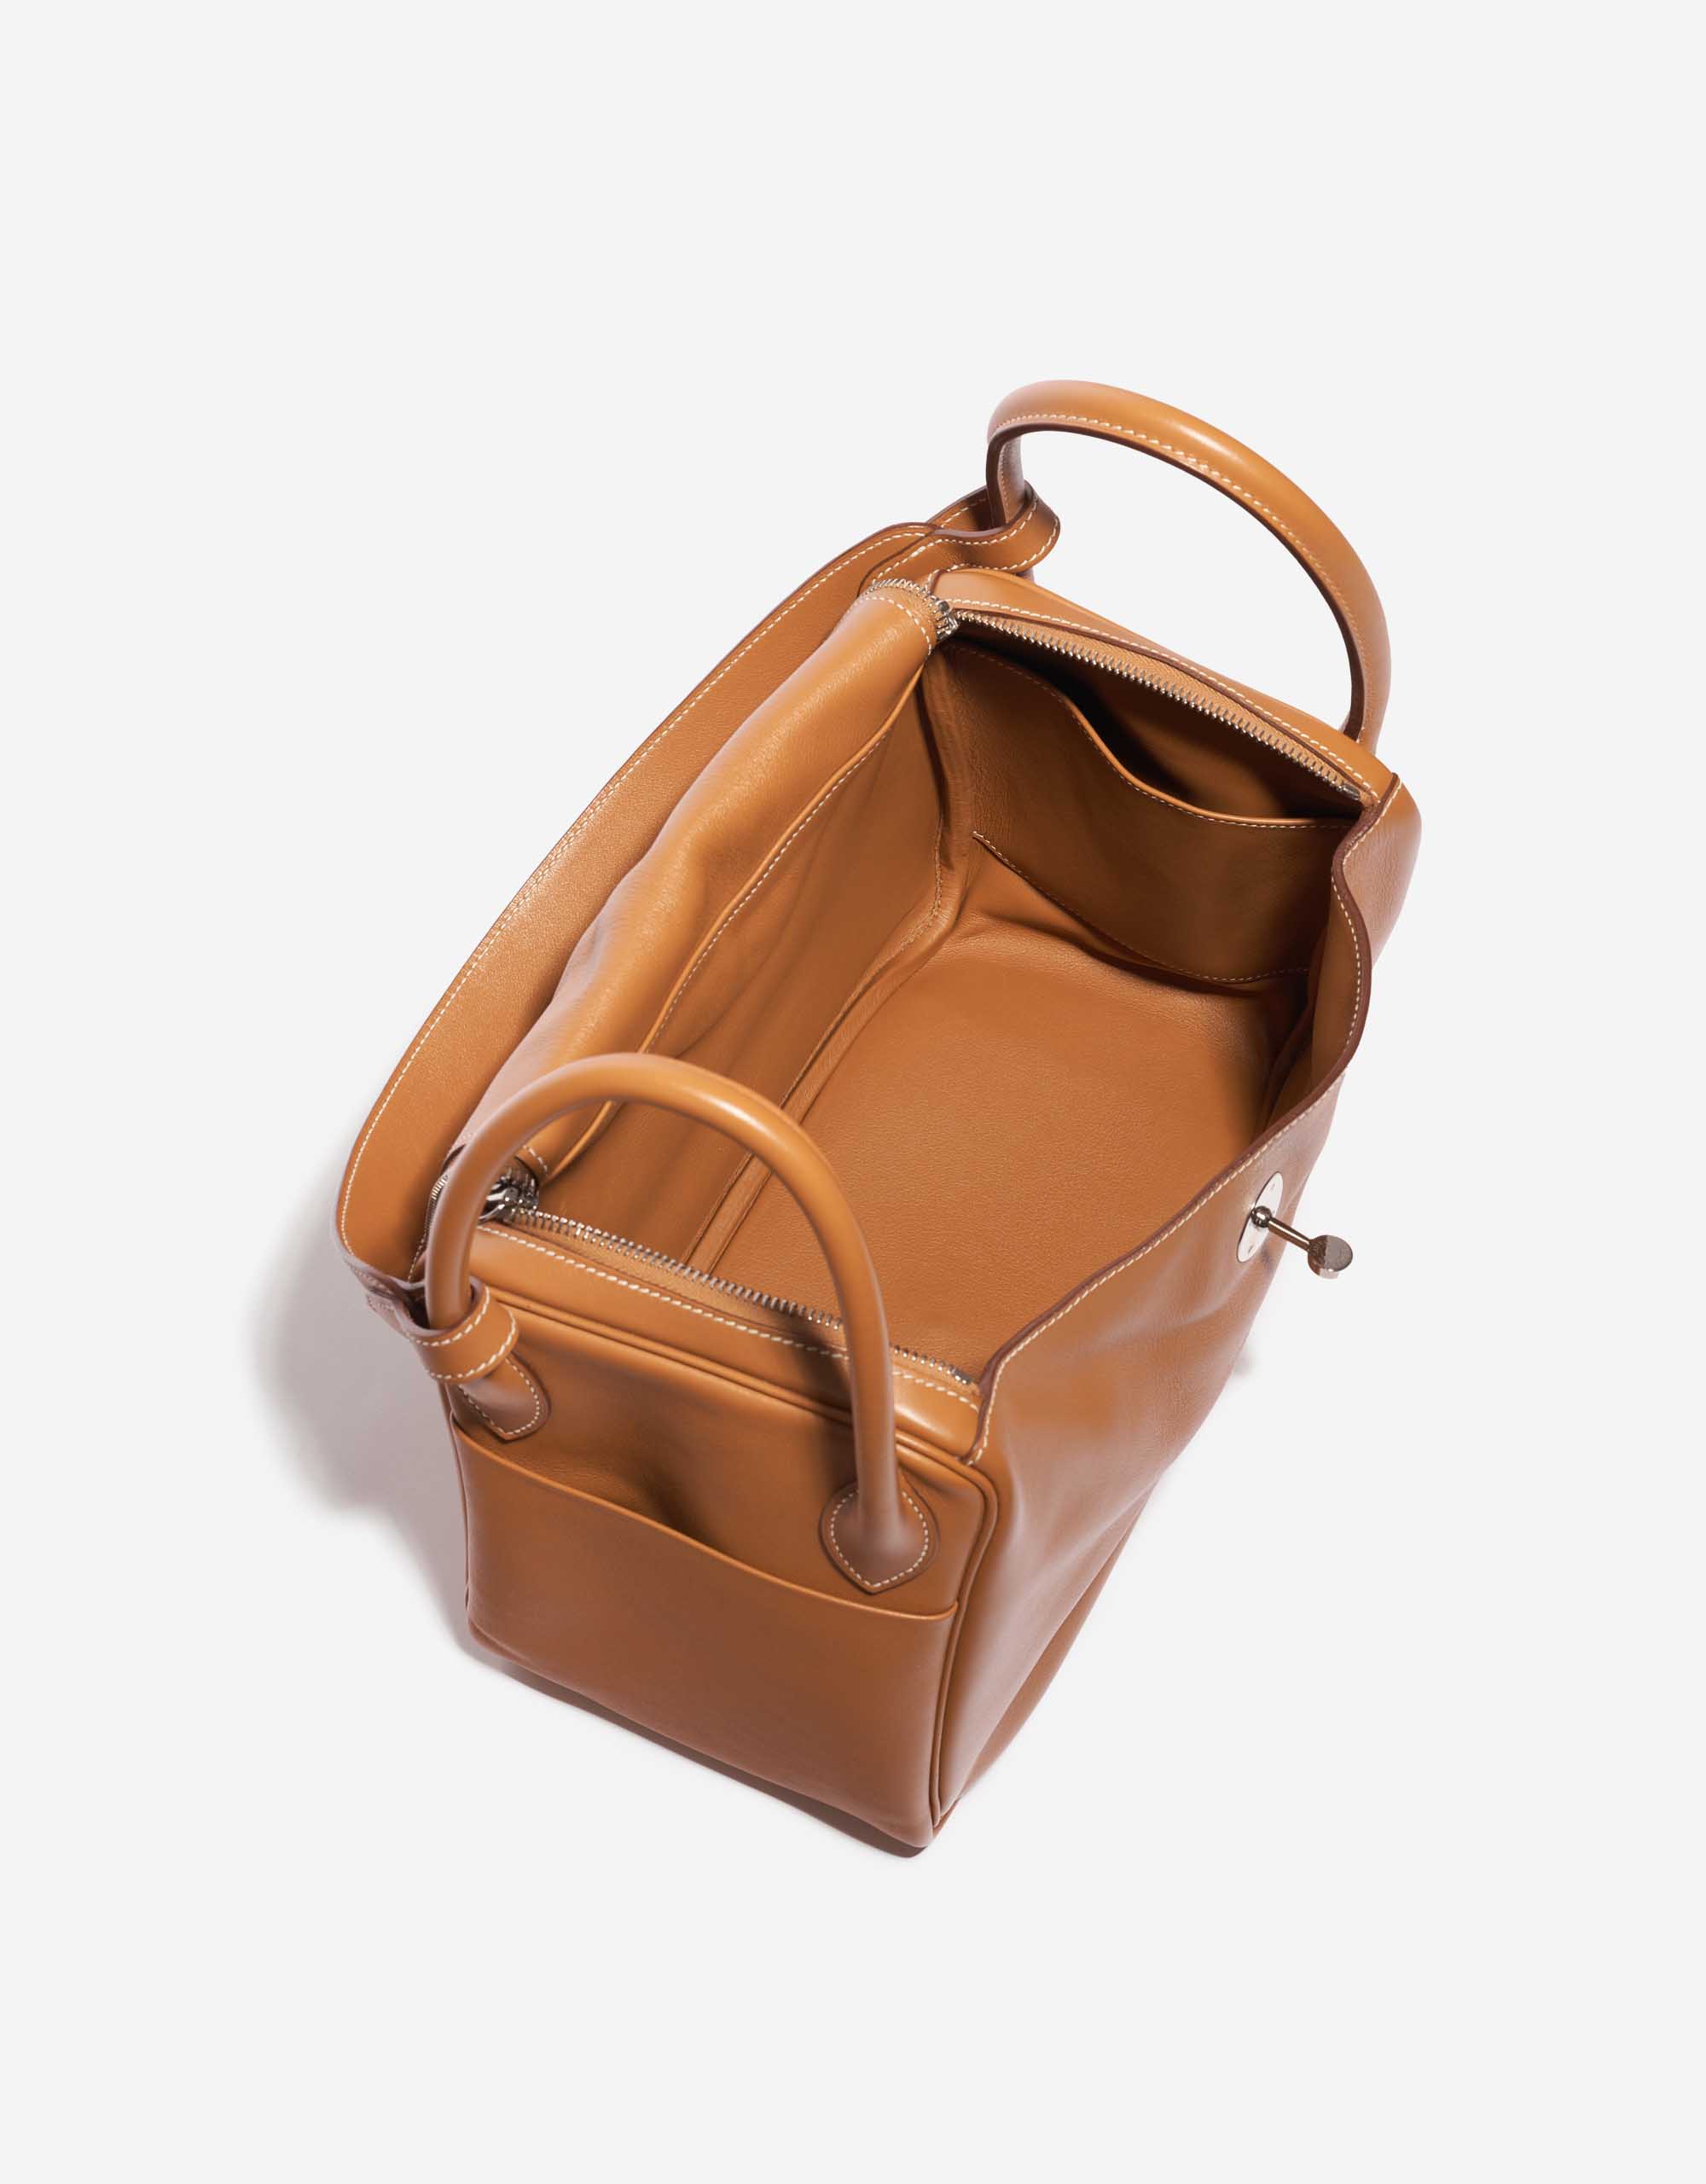 Pre-owned Hermès bag Lindy 30 Swift Gold Brown Inside | Sell your designer bag on Saclab.com